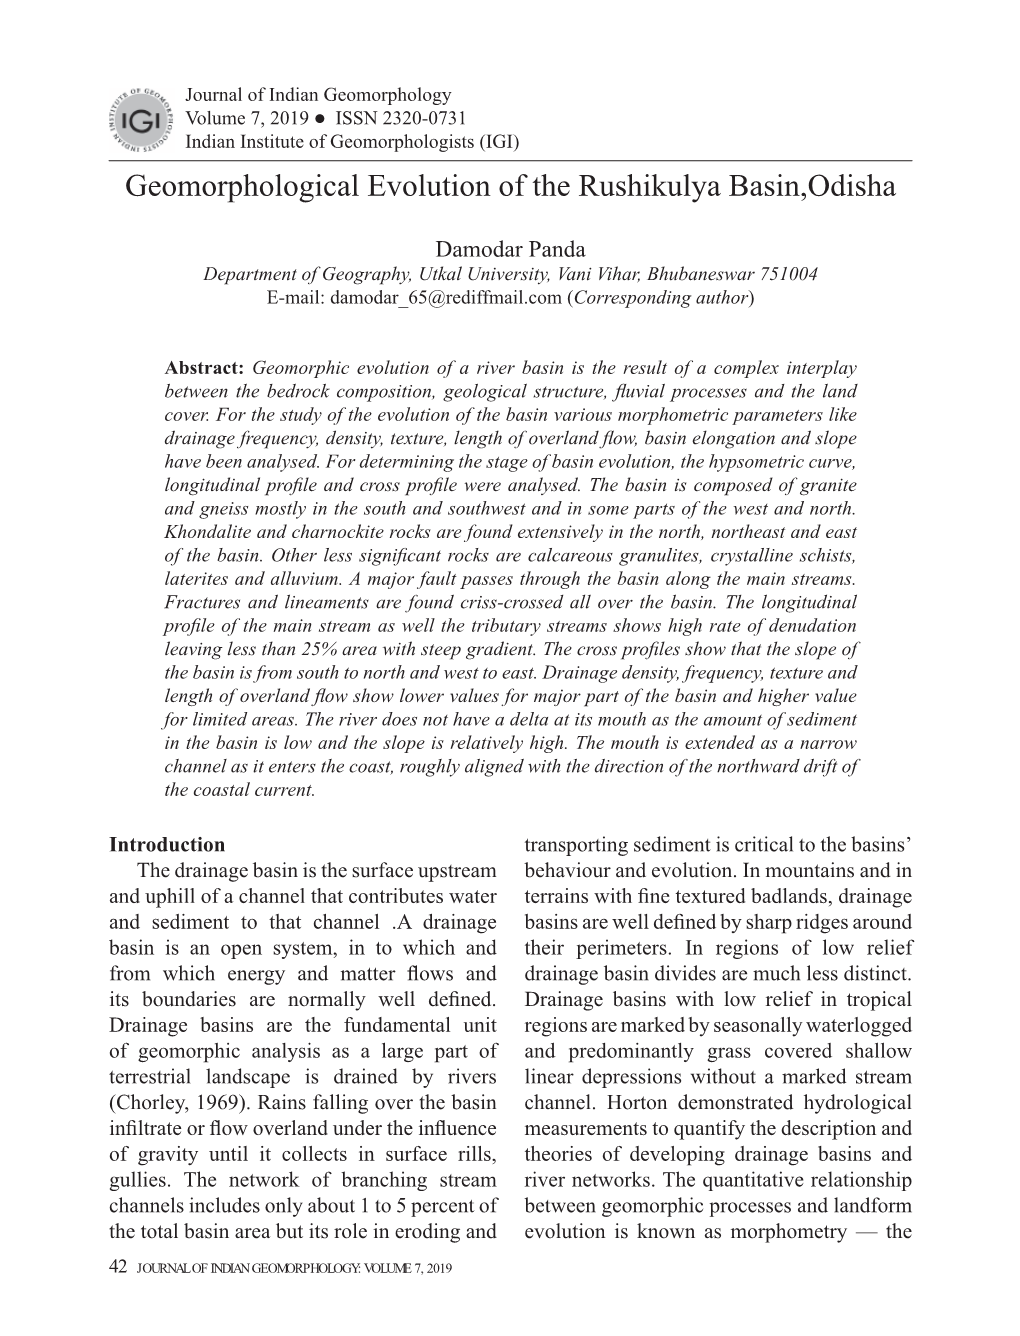 Geomorphological Evolution of the Rushikulya Basin, Odisha